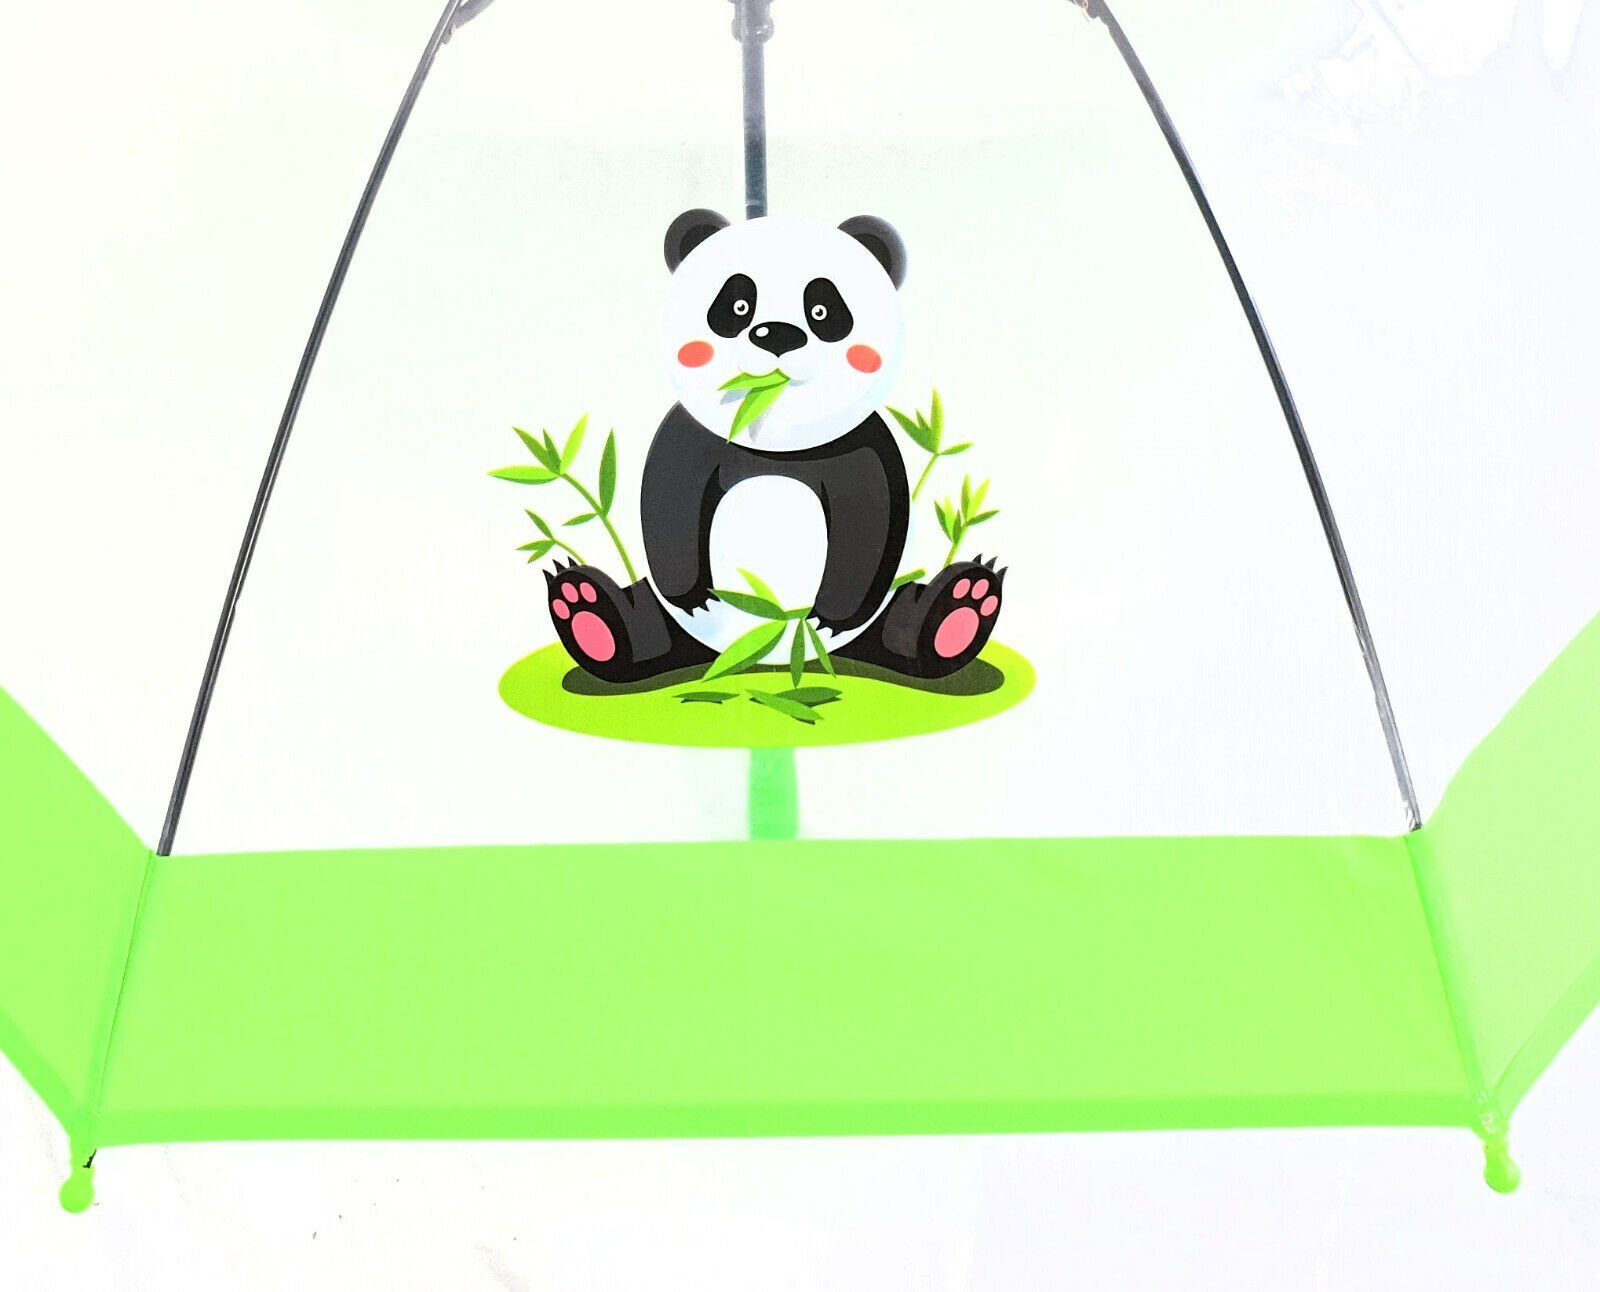 durchsichtig Automatik, mit Kinder Dr. Panda Neuser Regenschirm süßer tranparent Stockregenschirm transparent grün